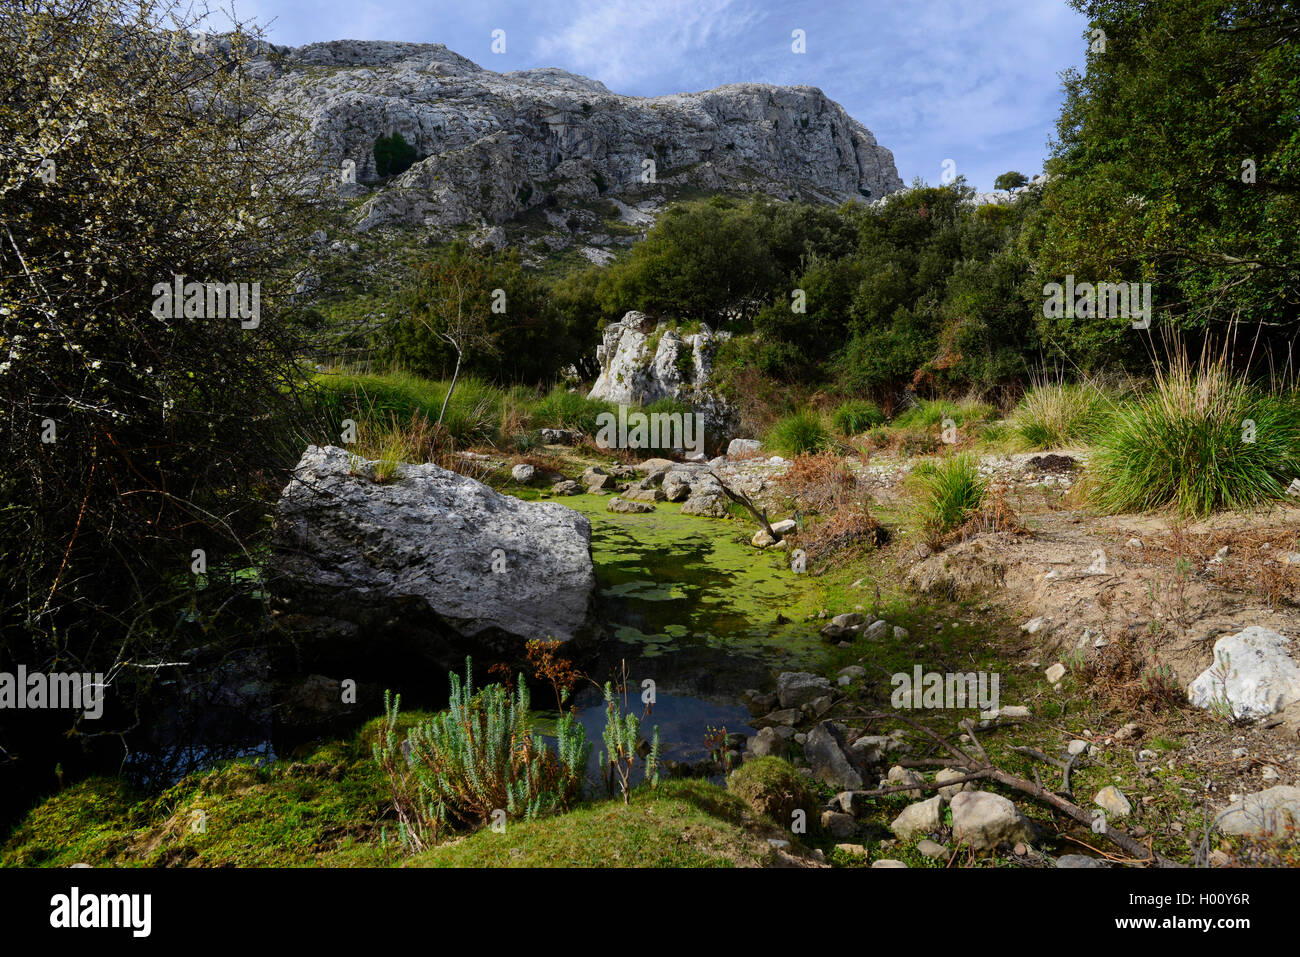 Teich im Berg sof Sierre de Tramintana, Spanien, Balearen, Mallorca, Serra de Tramuntana. Stockfoto